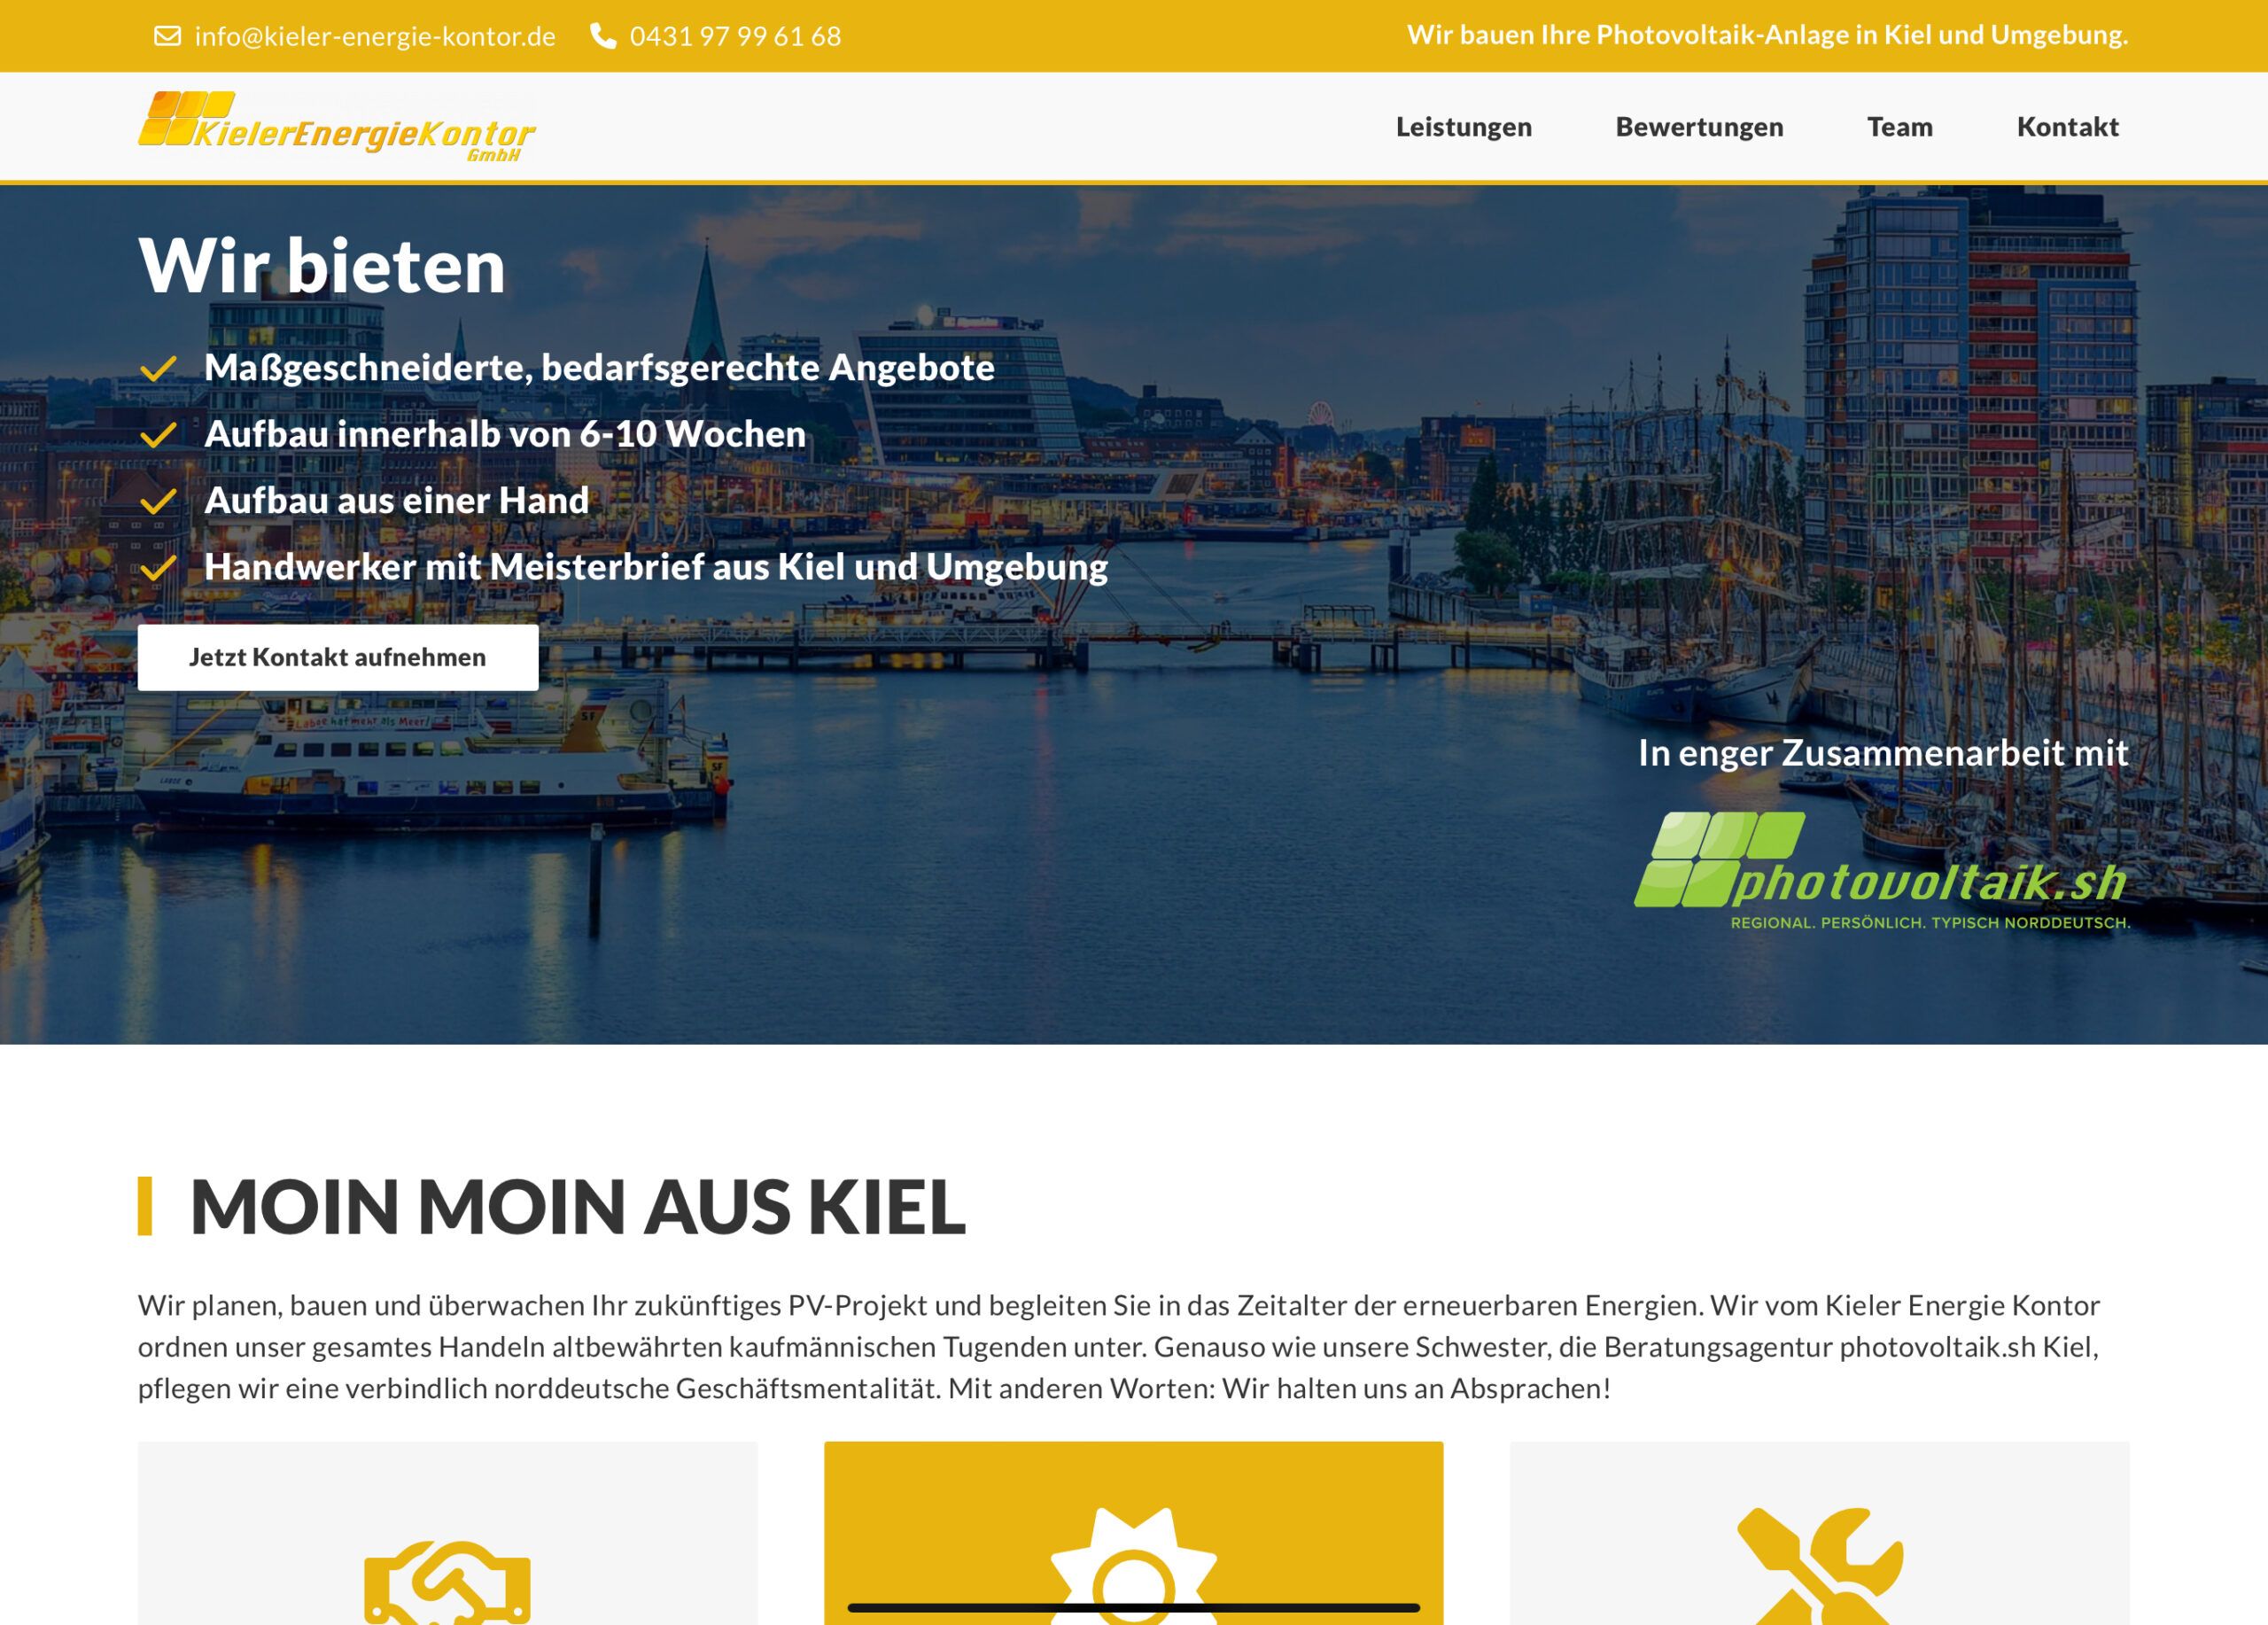 Kieler Energie Kontor Website